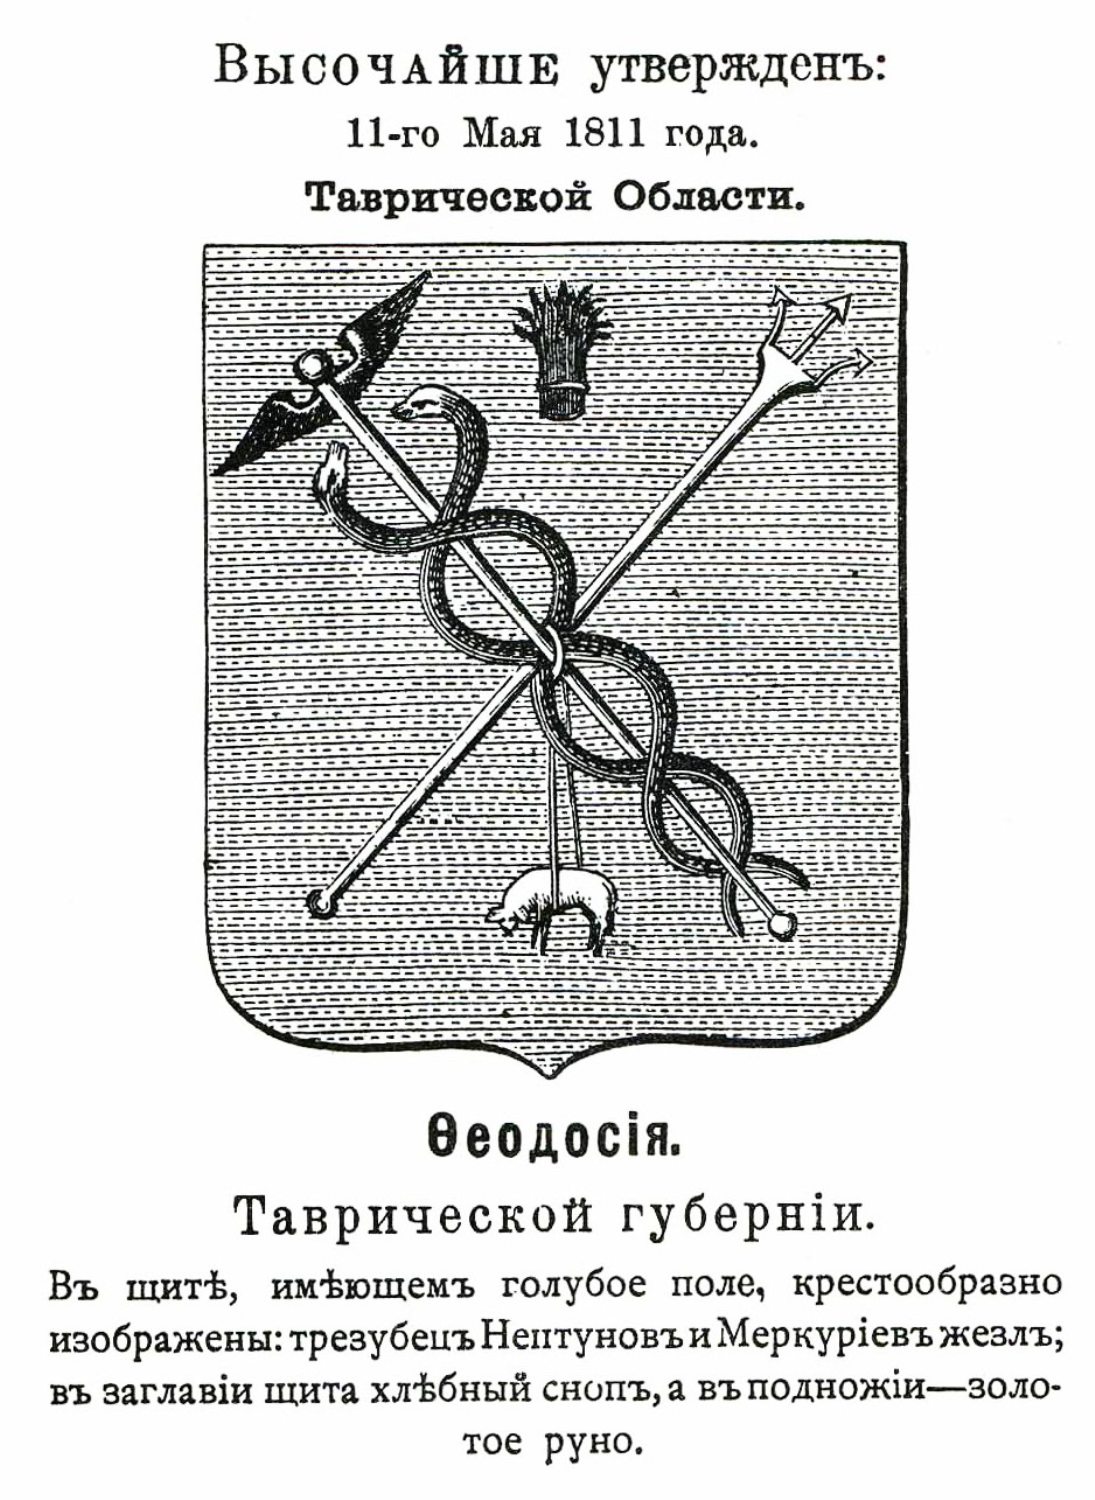 Герб Феодосии 1811